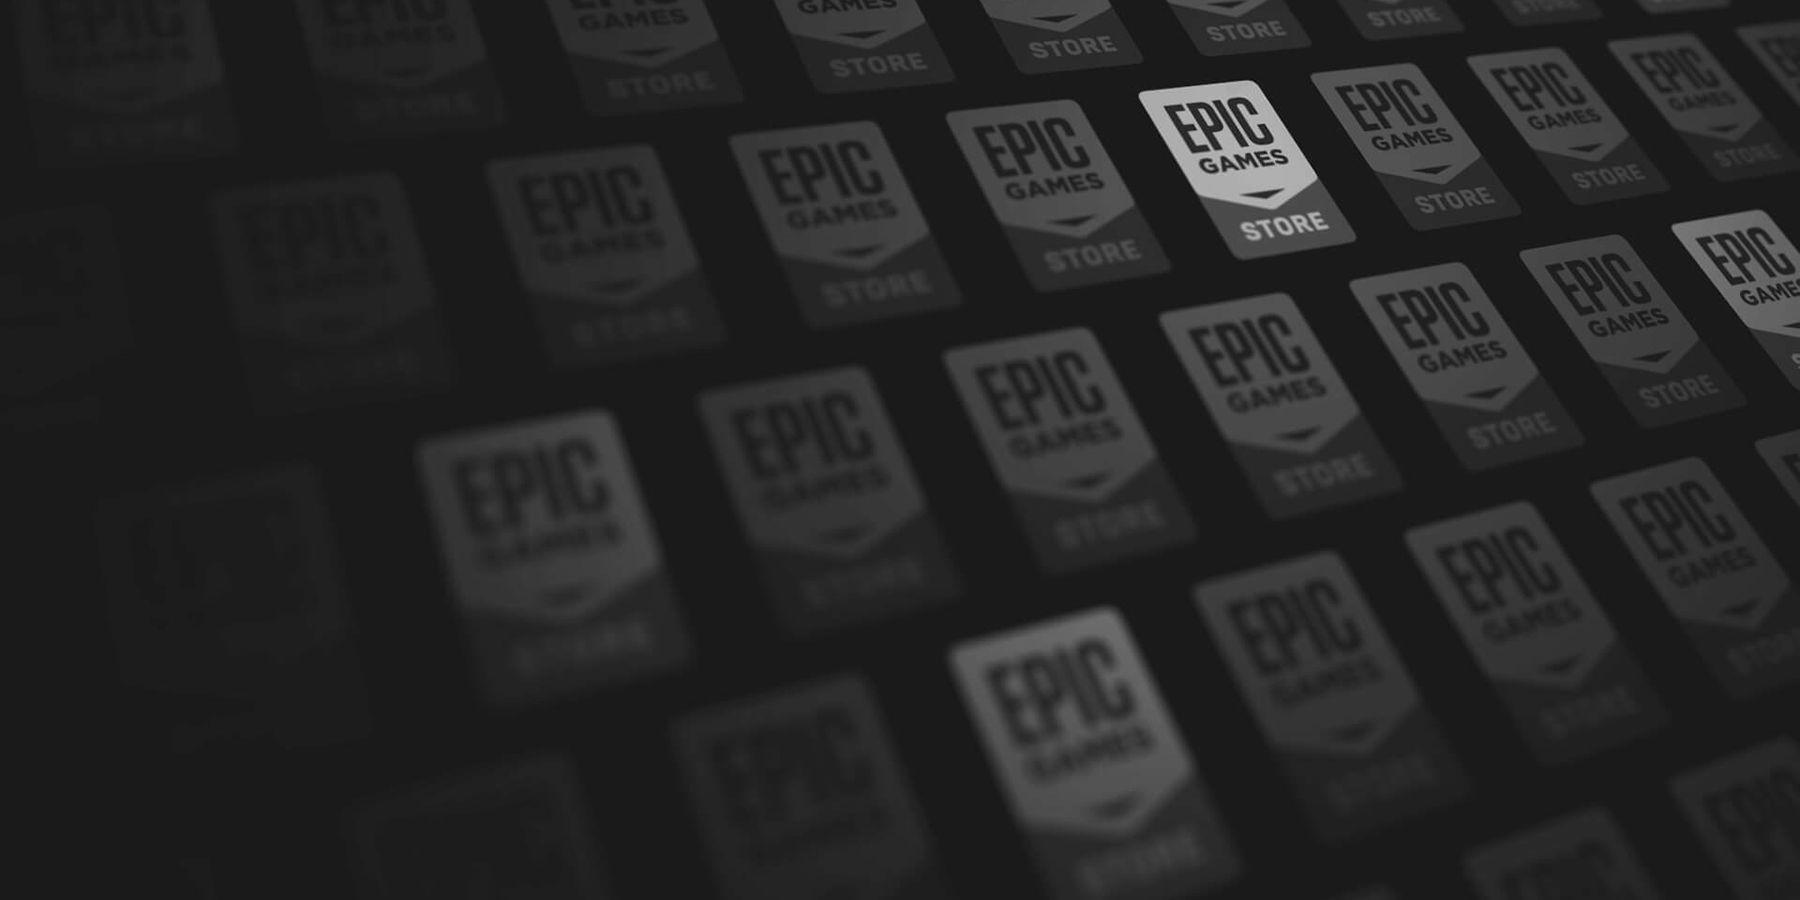 Hra Epic Games Free Game pre 8. septembra odhalila